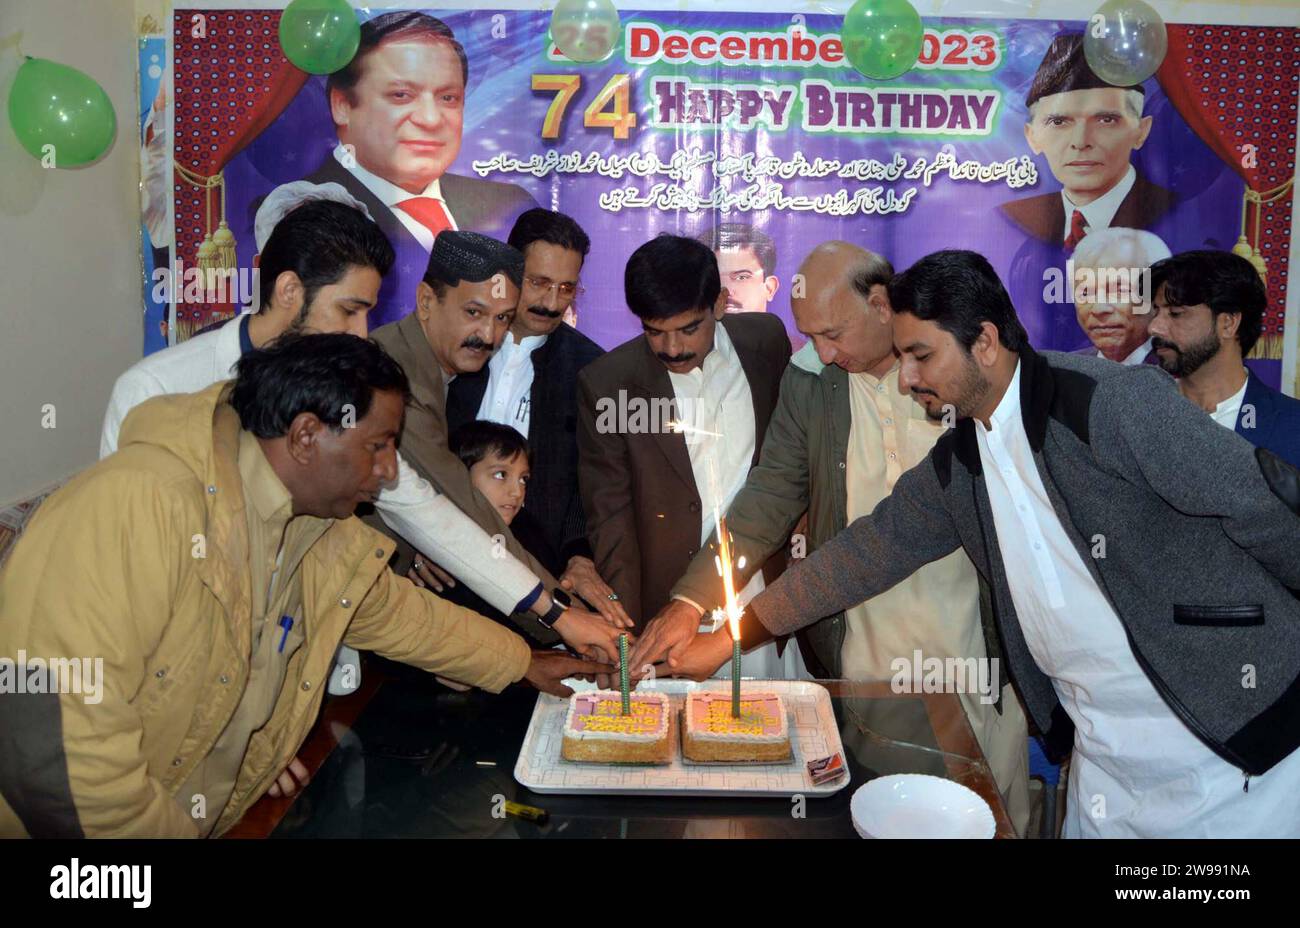 Le président du district de la Ligue musulmane (PML-N), Kaleem Shaikh, coupant un gâteau lors d'une cérémonie à l'occasion de l'anniversaire de naissance de Quaid-e-Azam Muhammad Ali Jinnah et Nawaz Sharif, à Hyderabad le lundi 25 décembre 2023. Banque D'Images